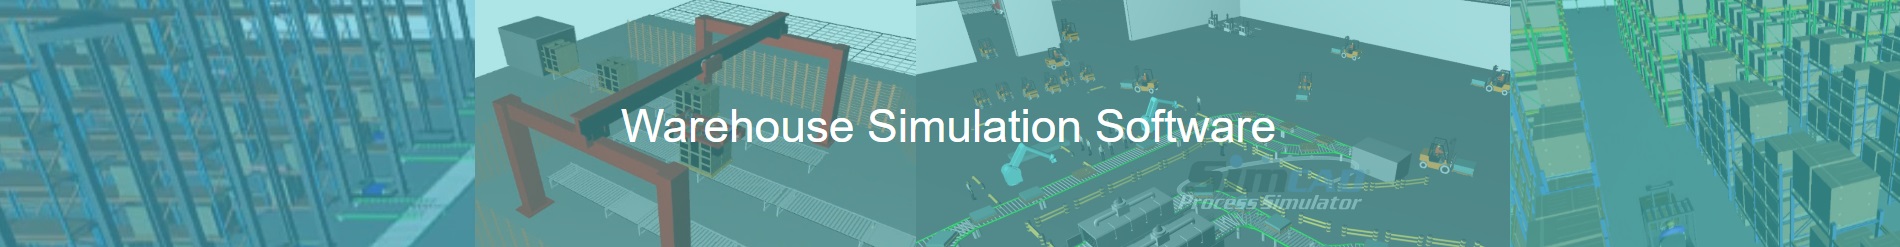 warehouse simulation - warehouse simulation software